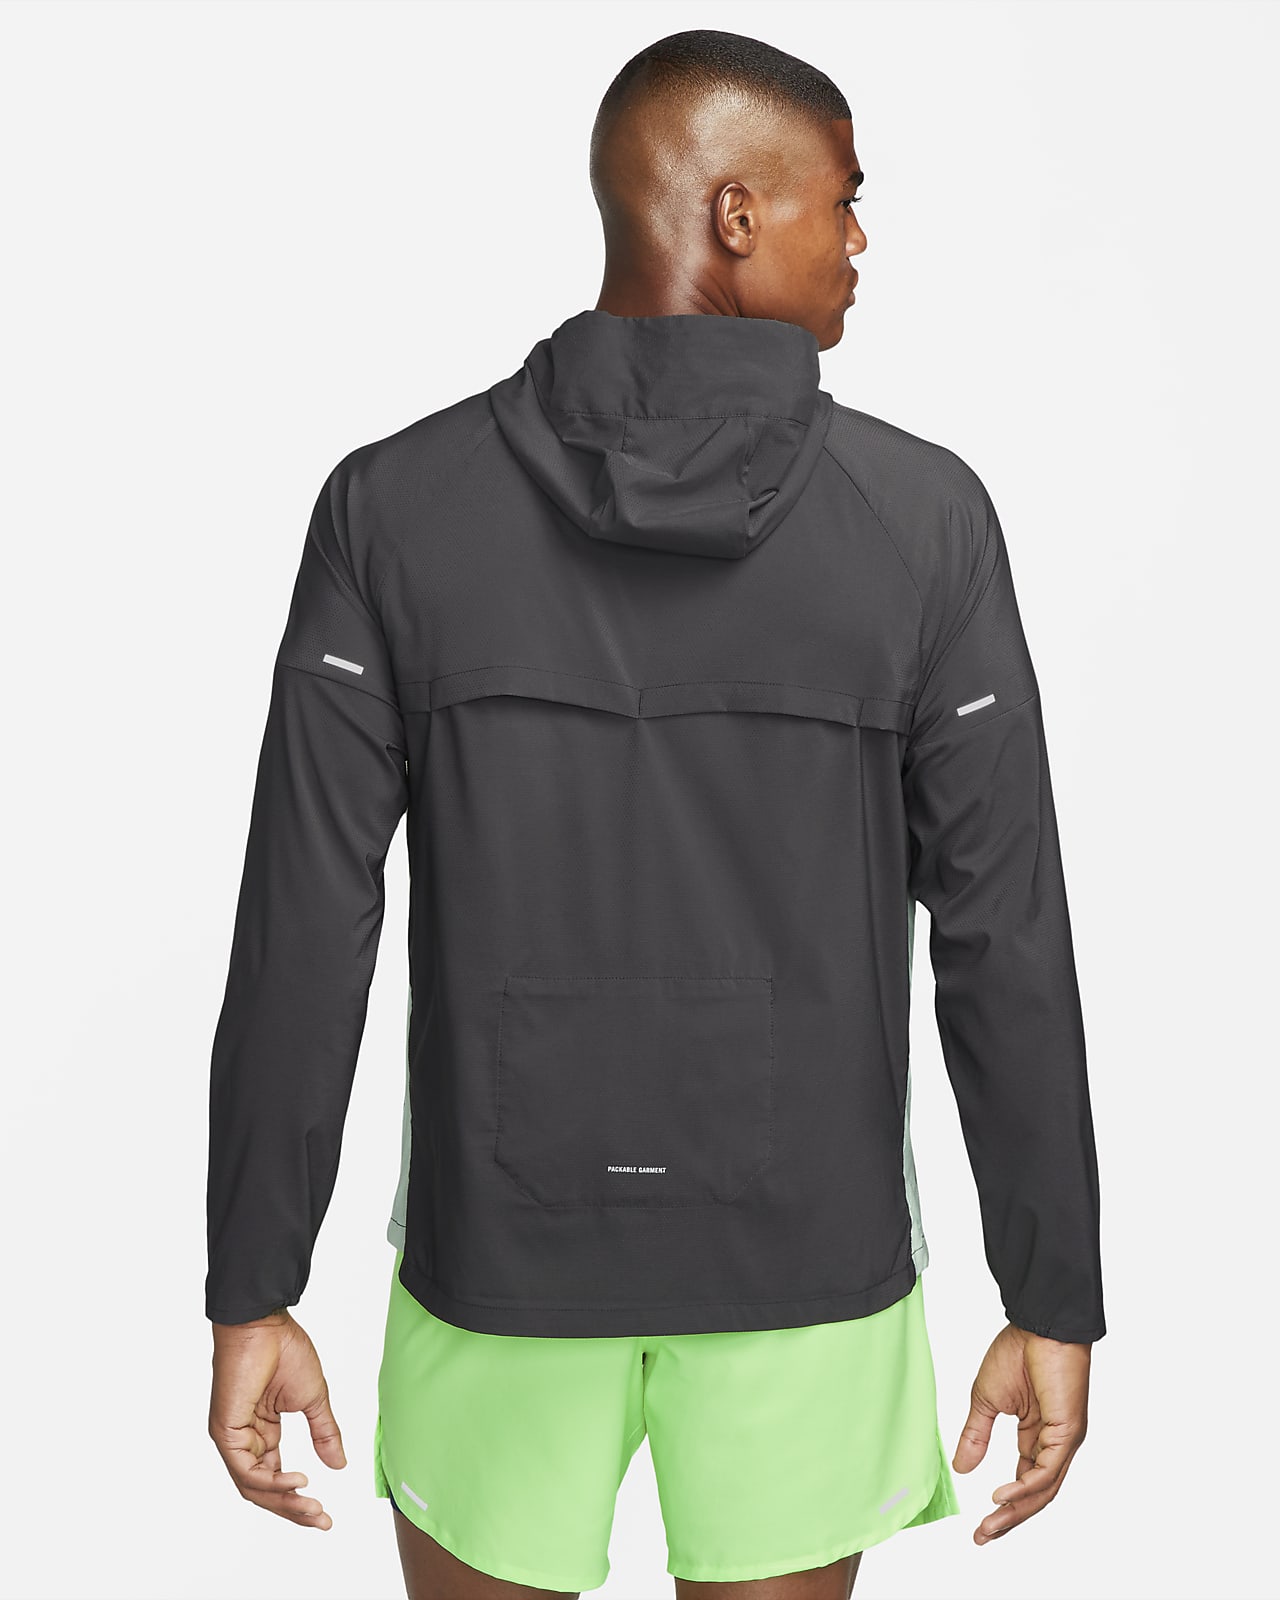 Nike Repel UV Windrunner Men's Running Jacket. Nike.com